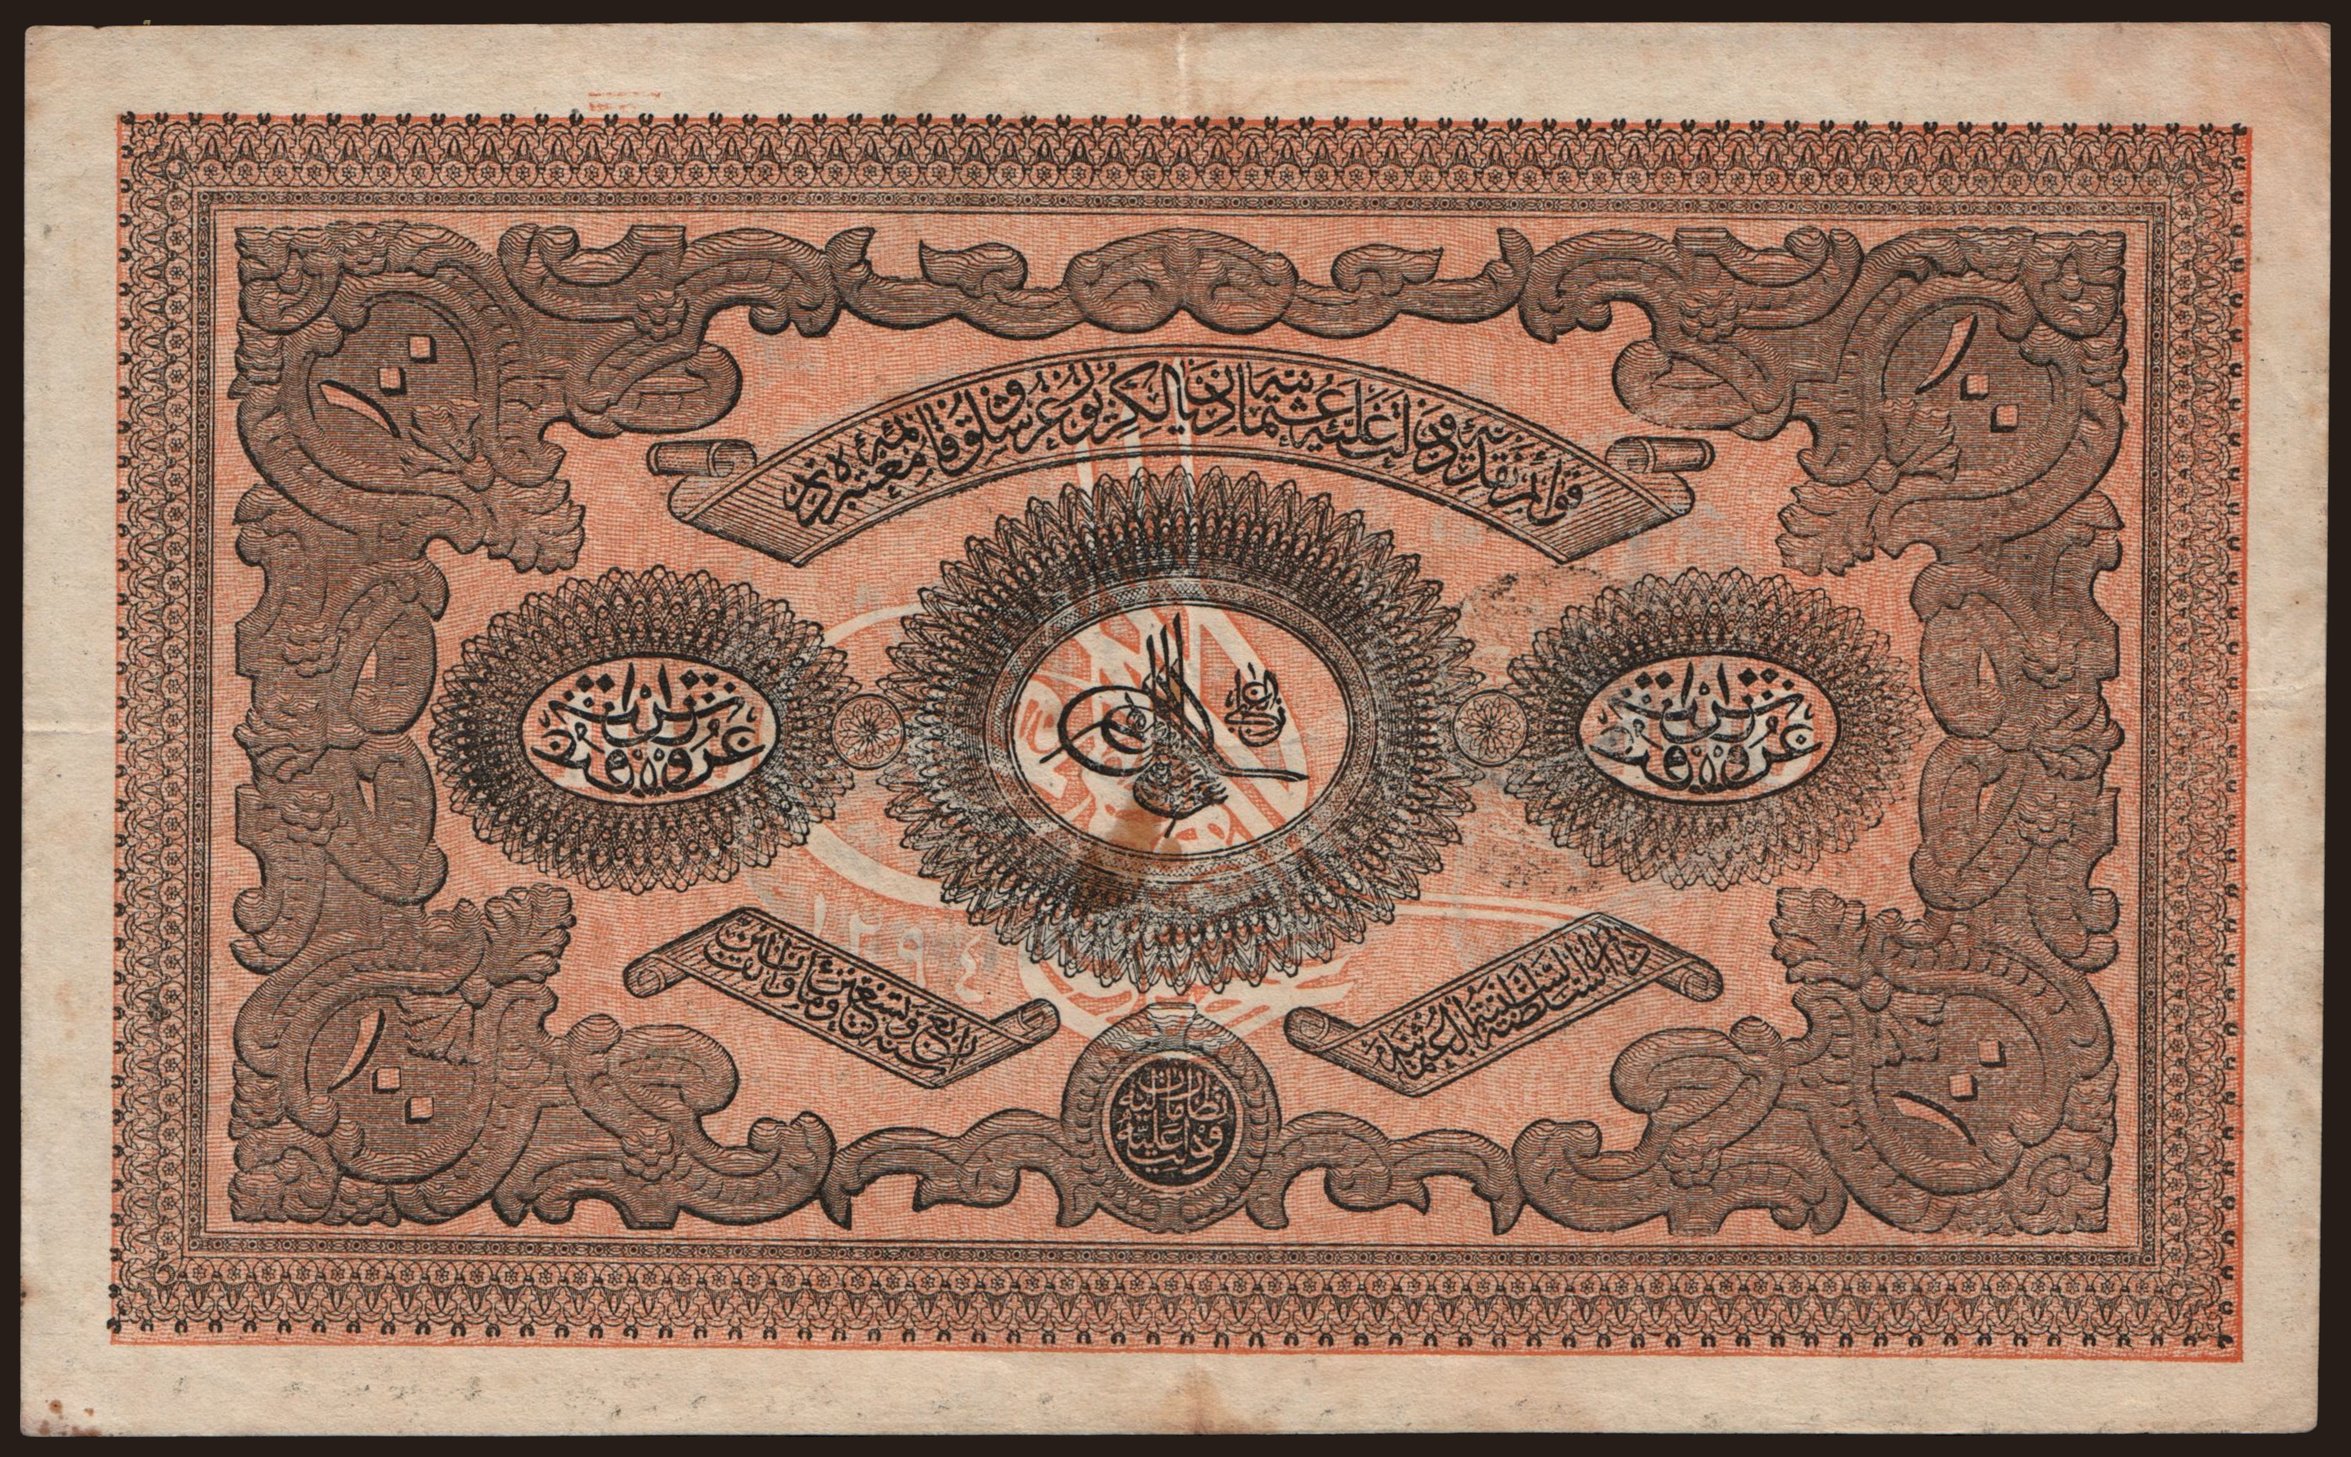 100 kurush, 1877